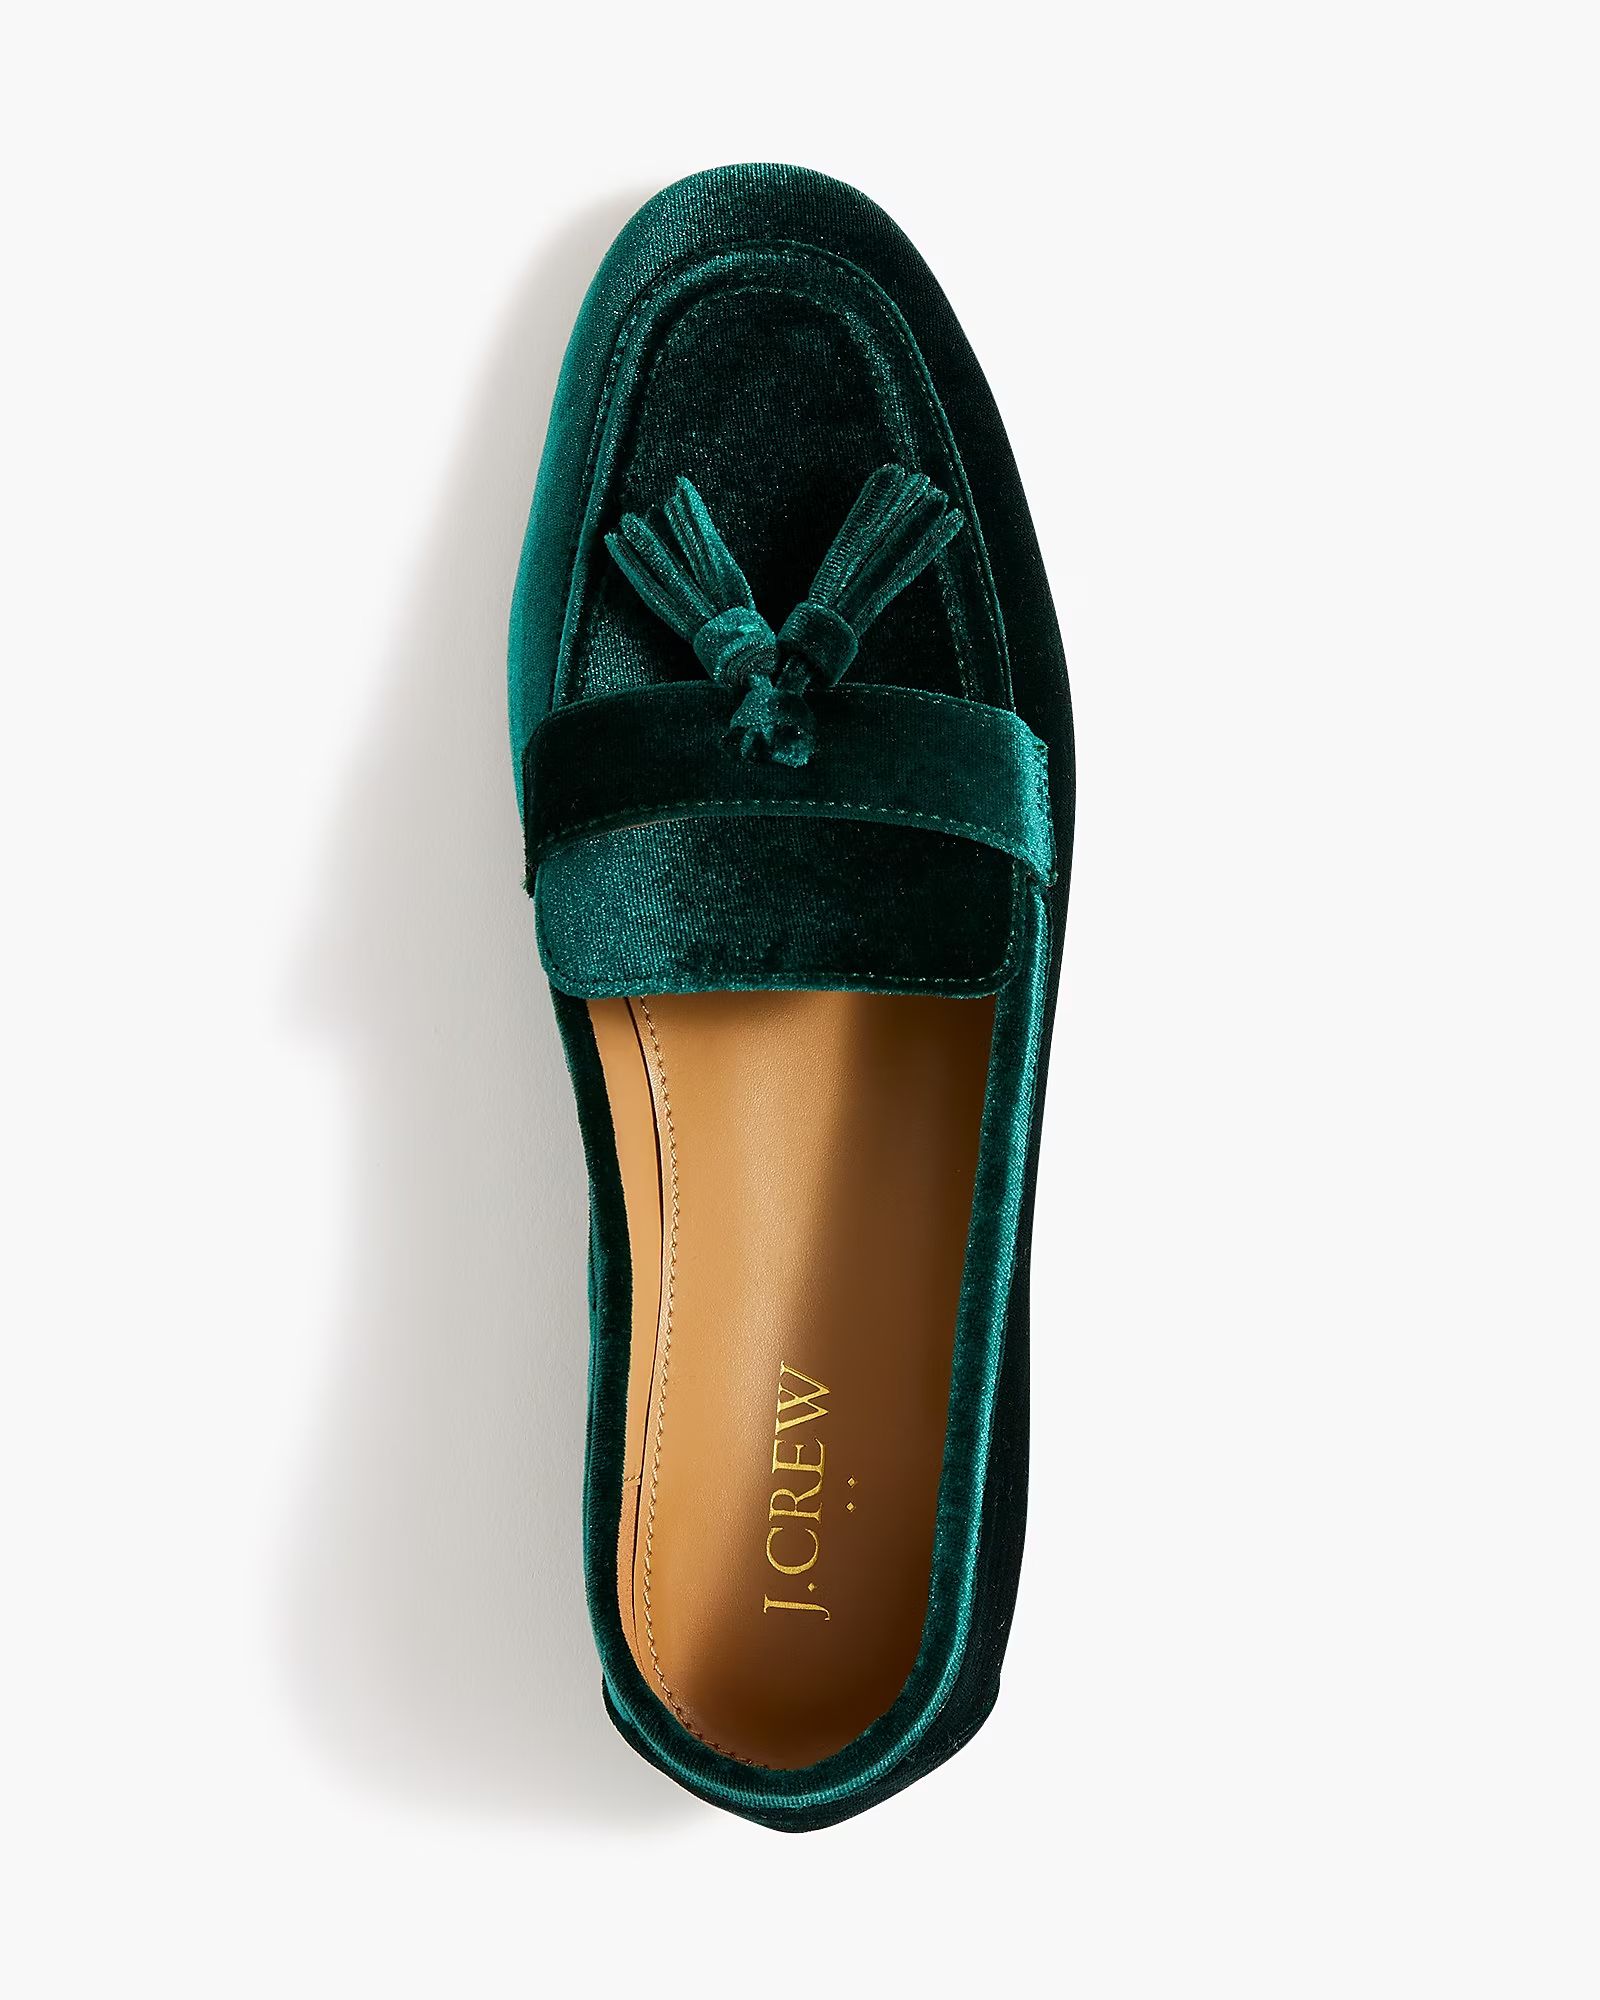 Velvet tassel loafers | J.Crew Factory